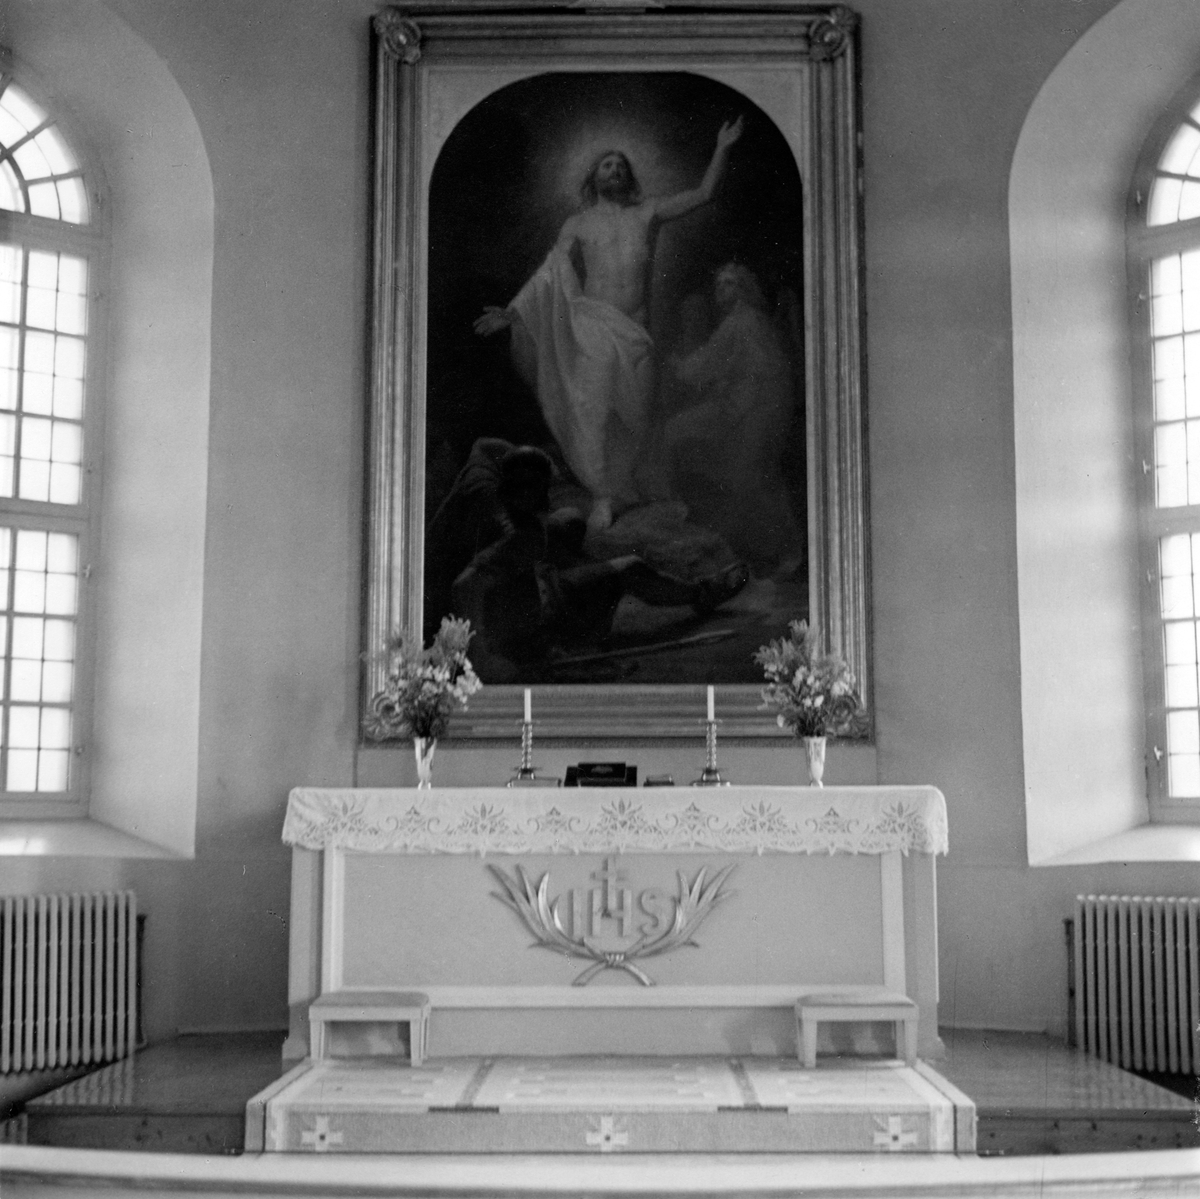 Interiör från Rogberga kyrka. Den invigdes 1868-09-06 av biskop H.G.Hultman. Altartavlan är målad av professor M.E.Winge, skänkt 1869 av änkefru Augusta Ribbing.